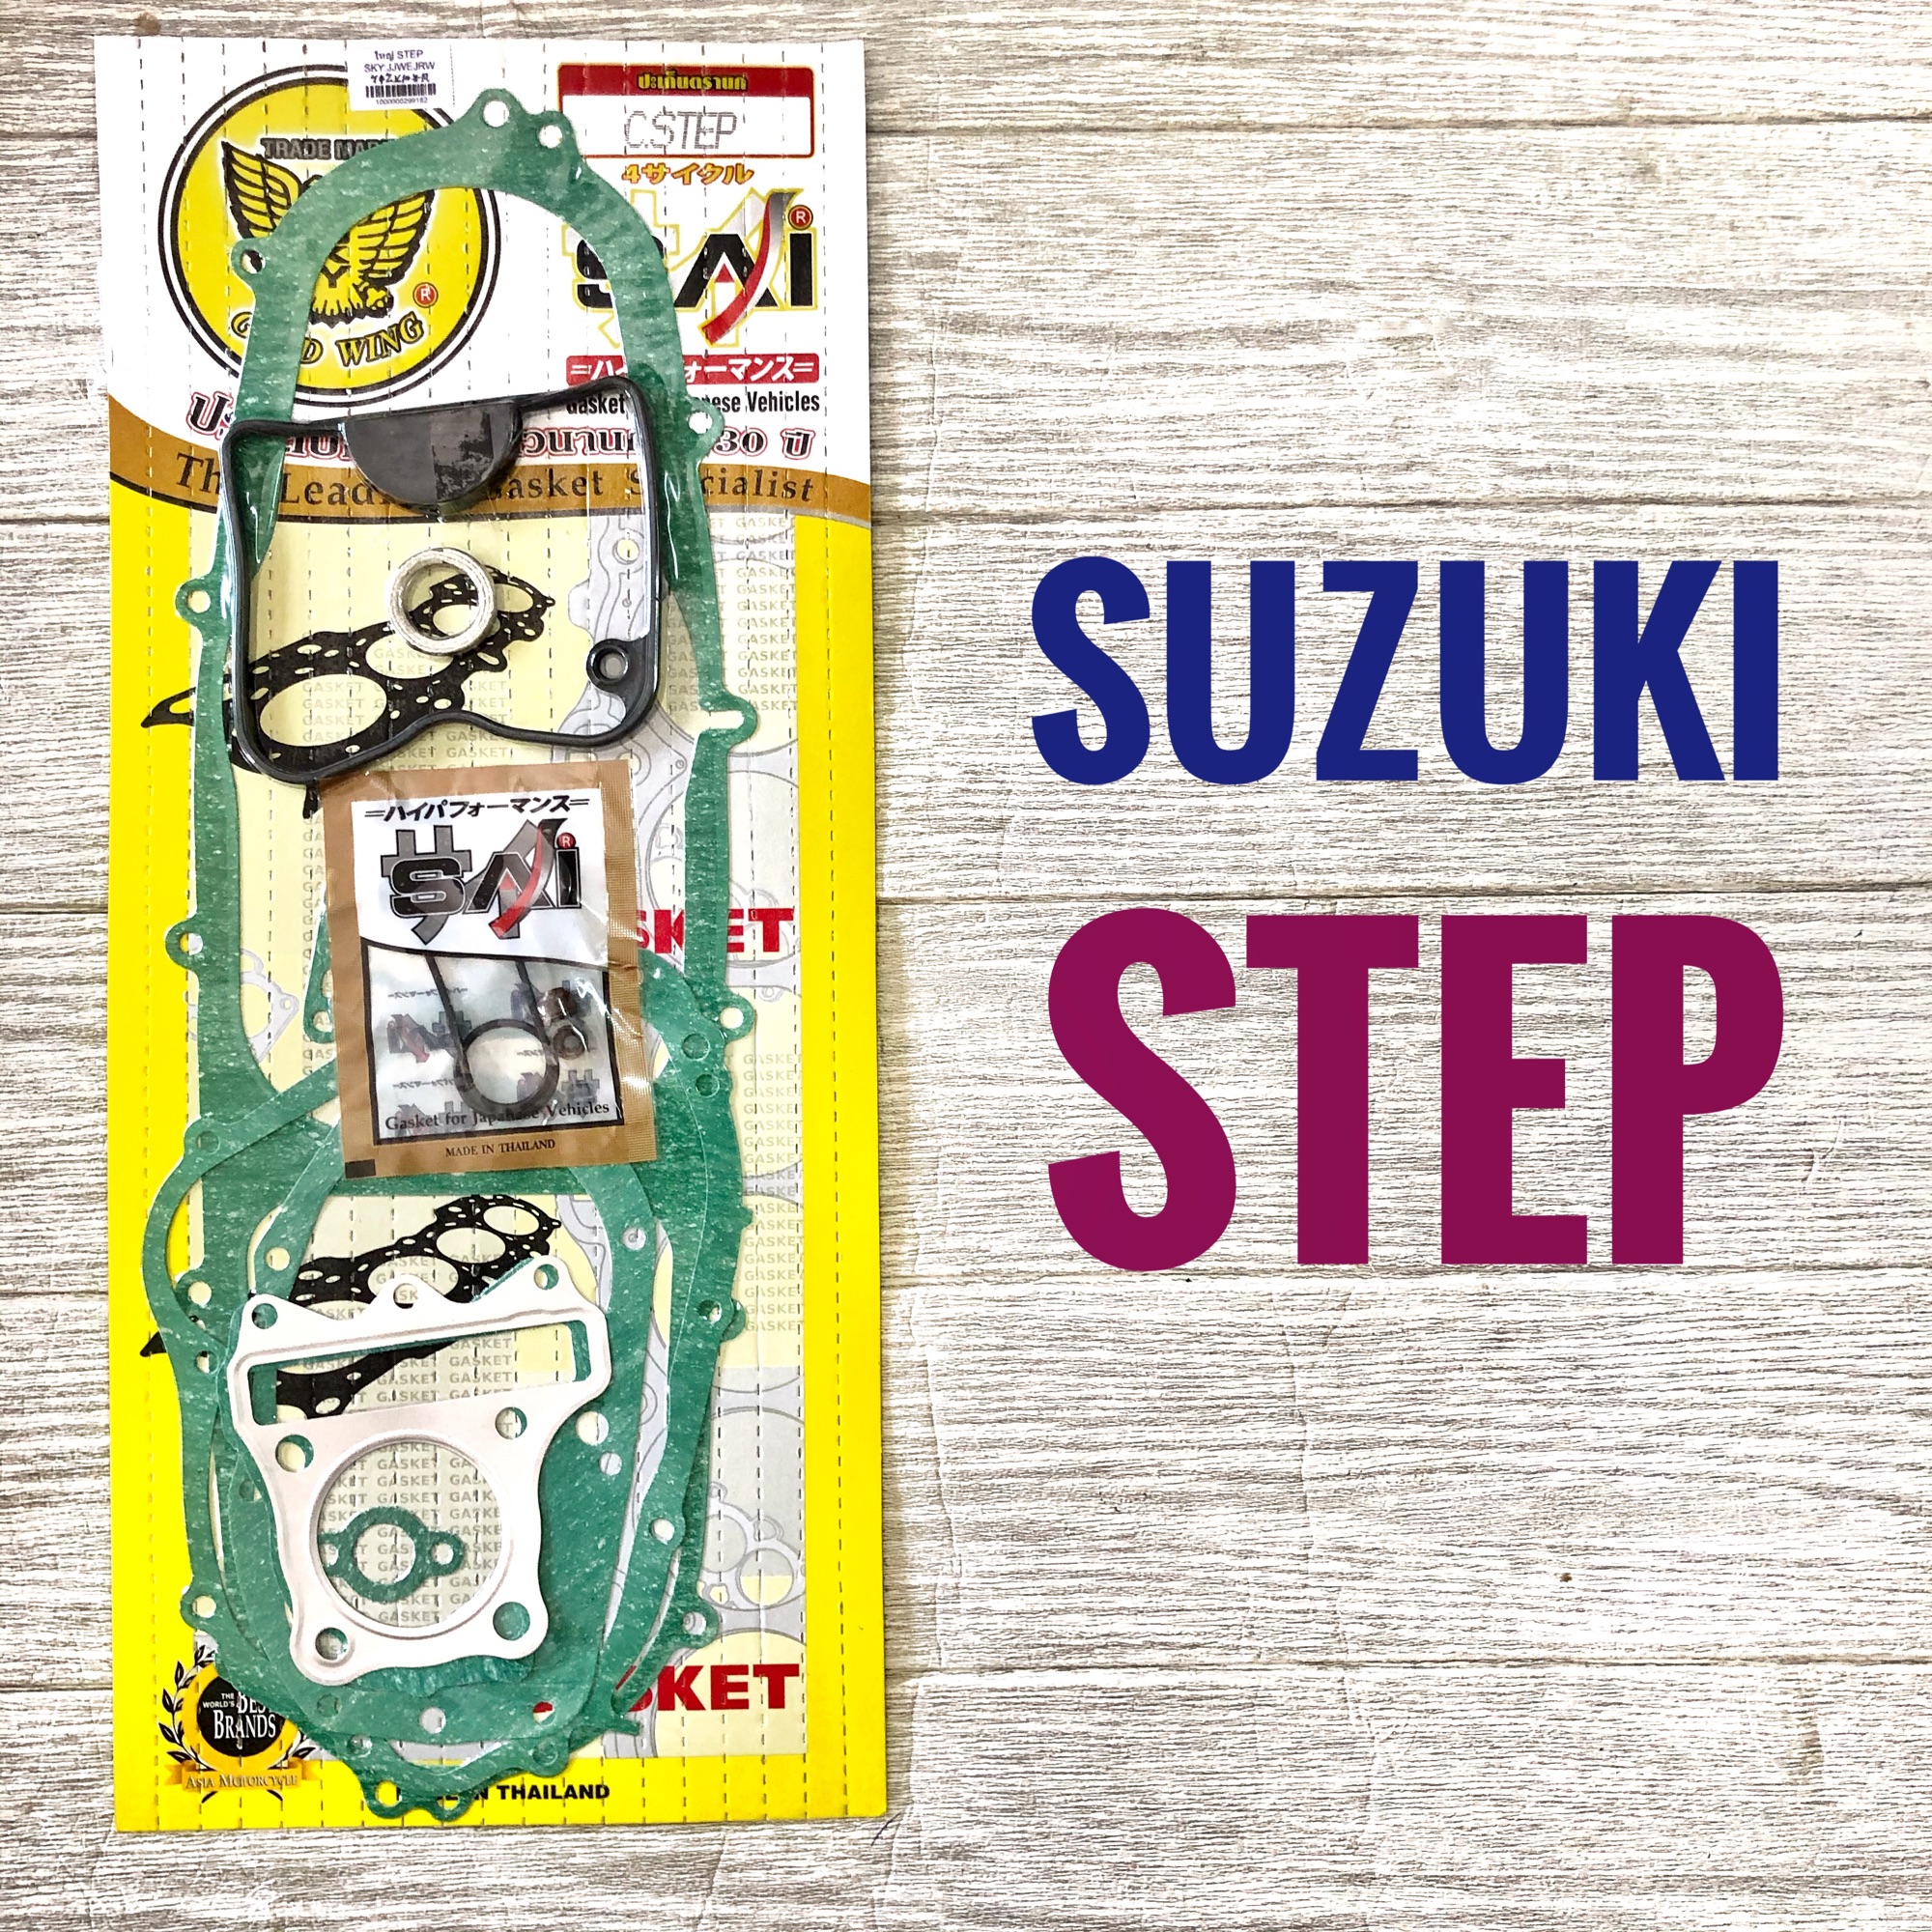 ปะเก็นชุดใหญ่ SUZUKI STEP 125 ซูซูกิ สเตป 125    ปะเก็น มอเตอร์ไซค์